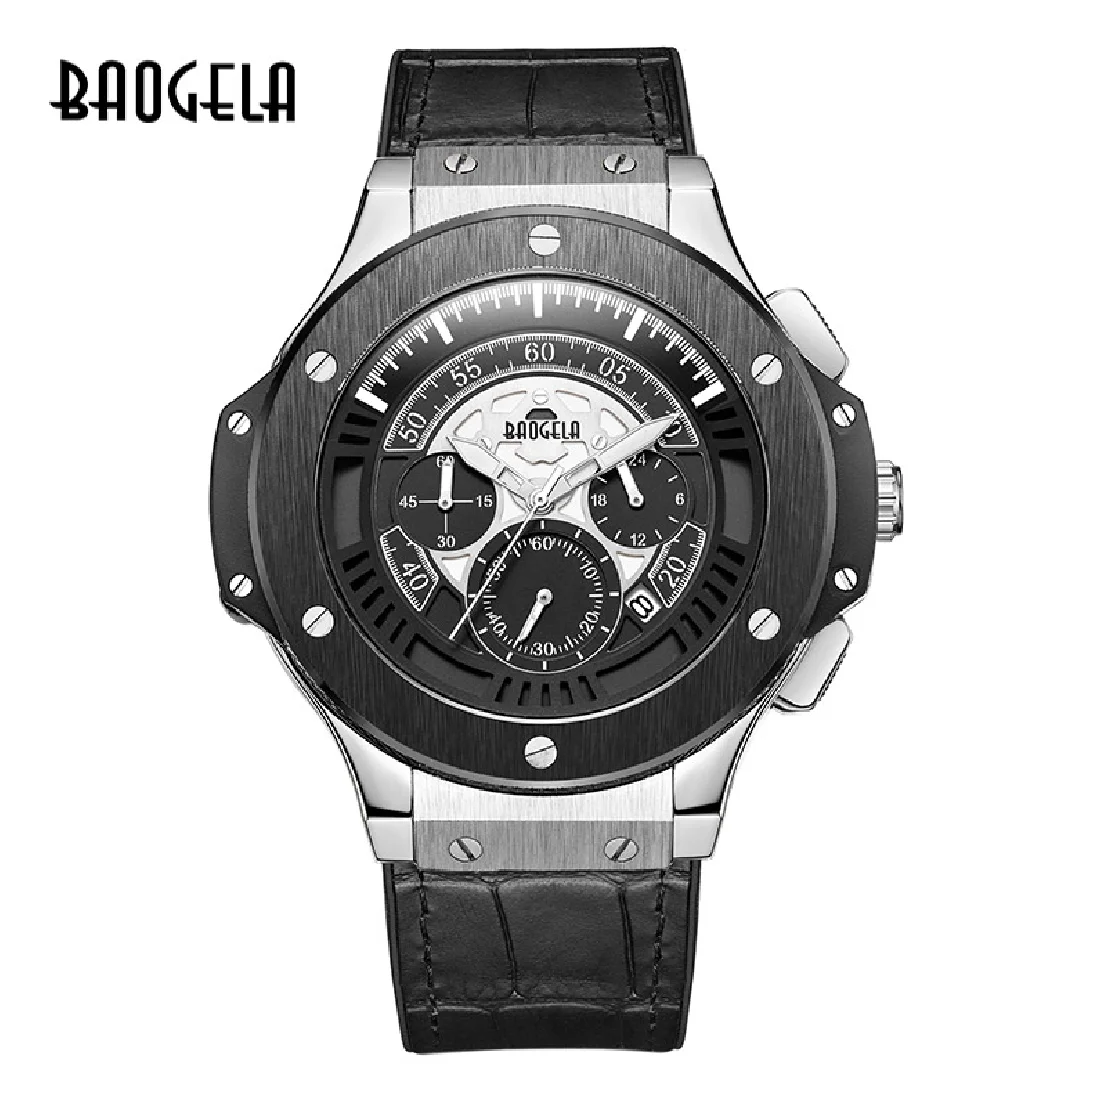 

BAOGELA hommes montres hommes horloge de luxe marque Quartz Sport montre Rose chronographe mode montre-bracelet pour hommes1910